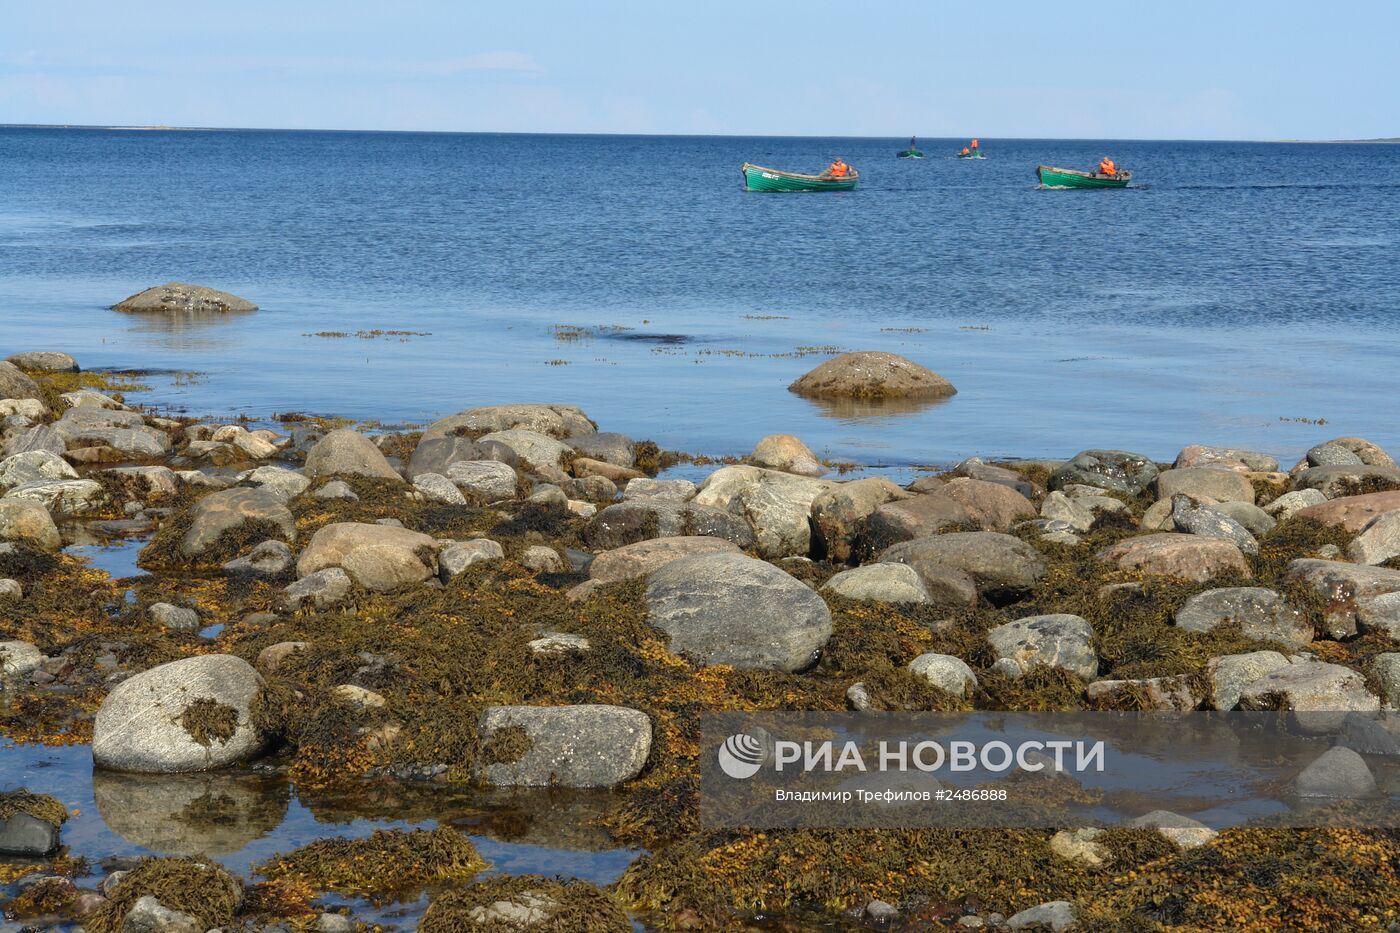 Сбор водорослей ламинария на Соловецком архипелаге